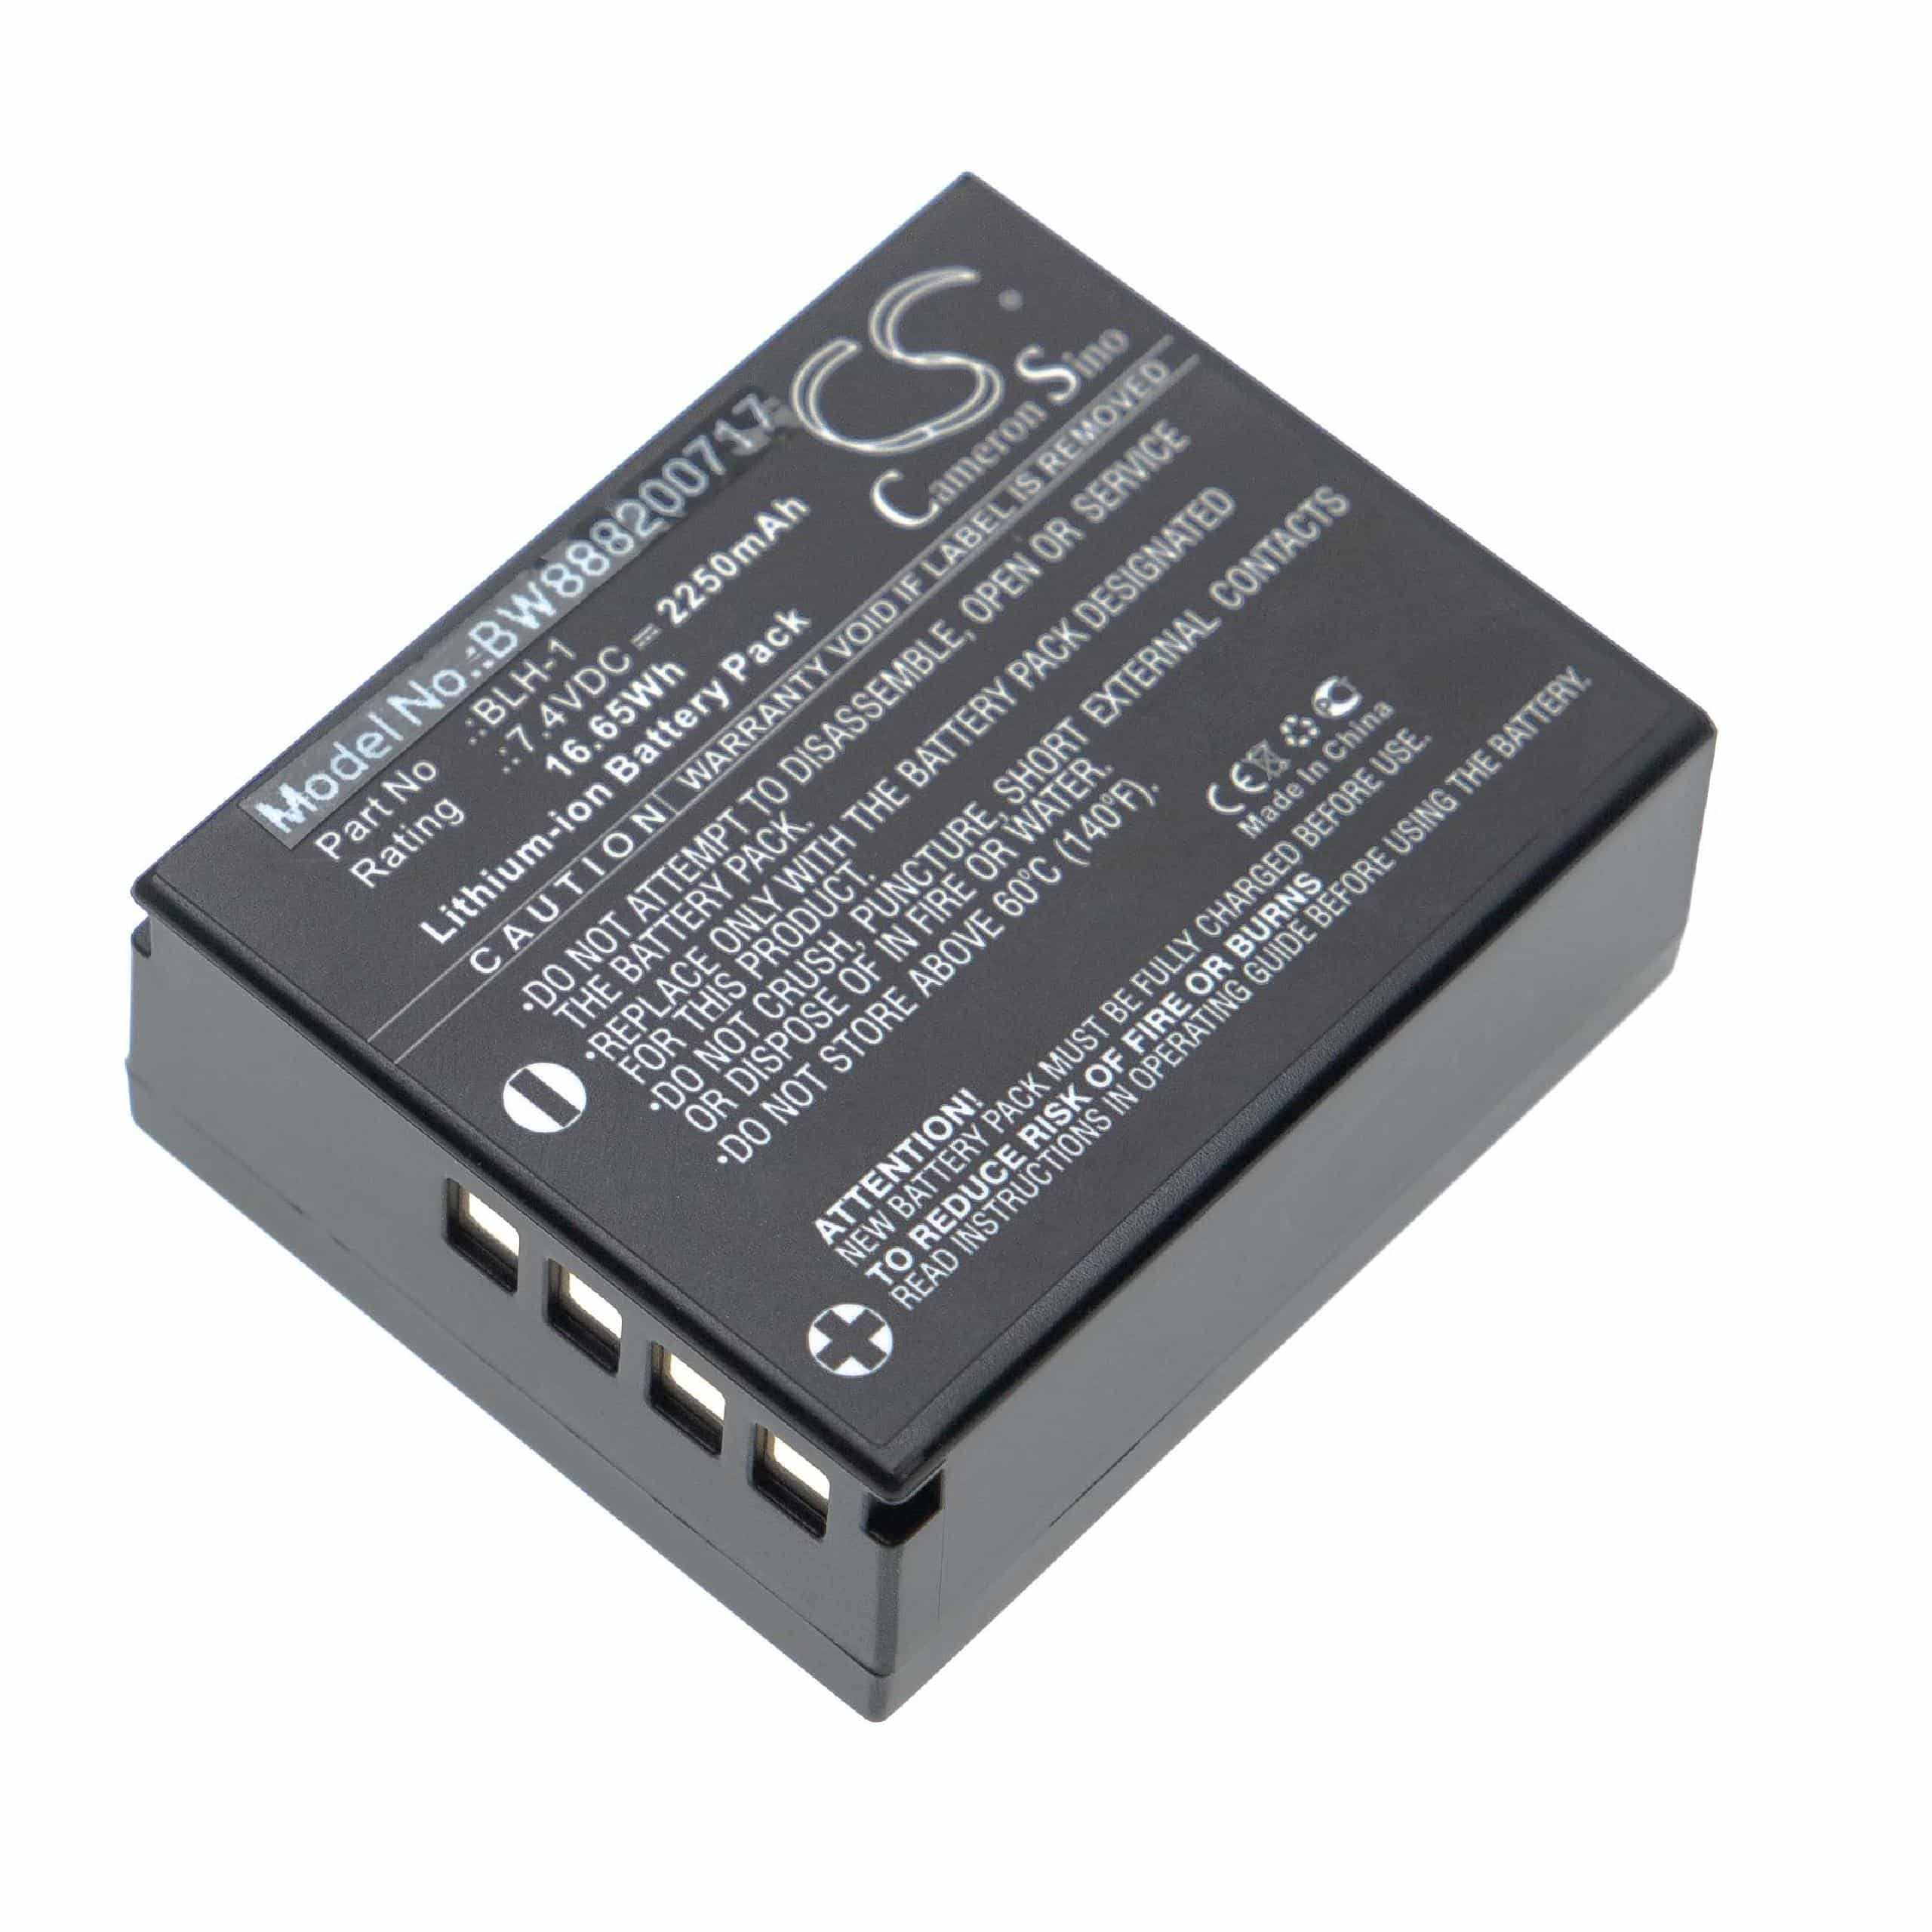 Batterie remplace Olympus BLH-1 pour appareil photo - 2250mAh 7,4V Li-ion